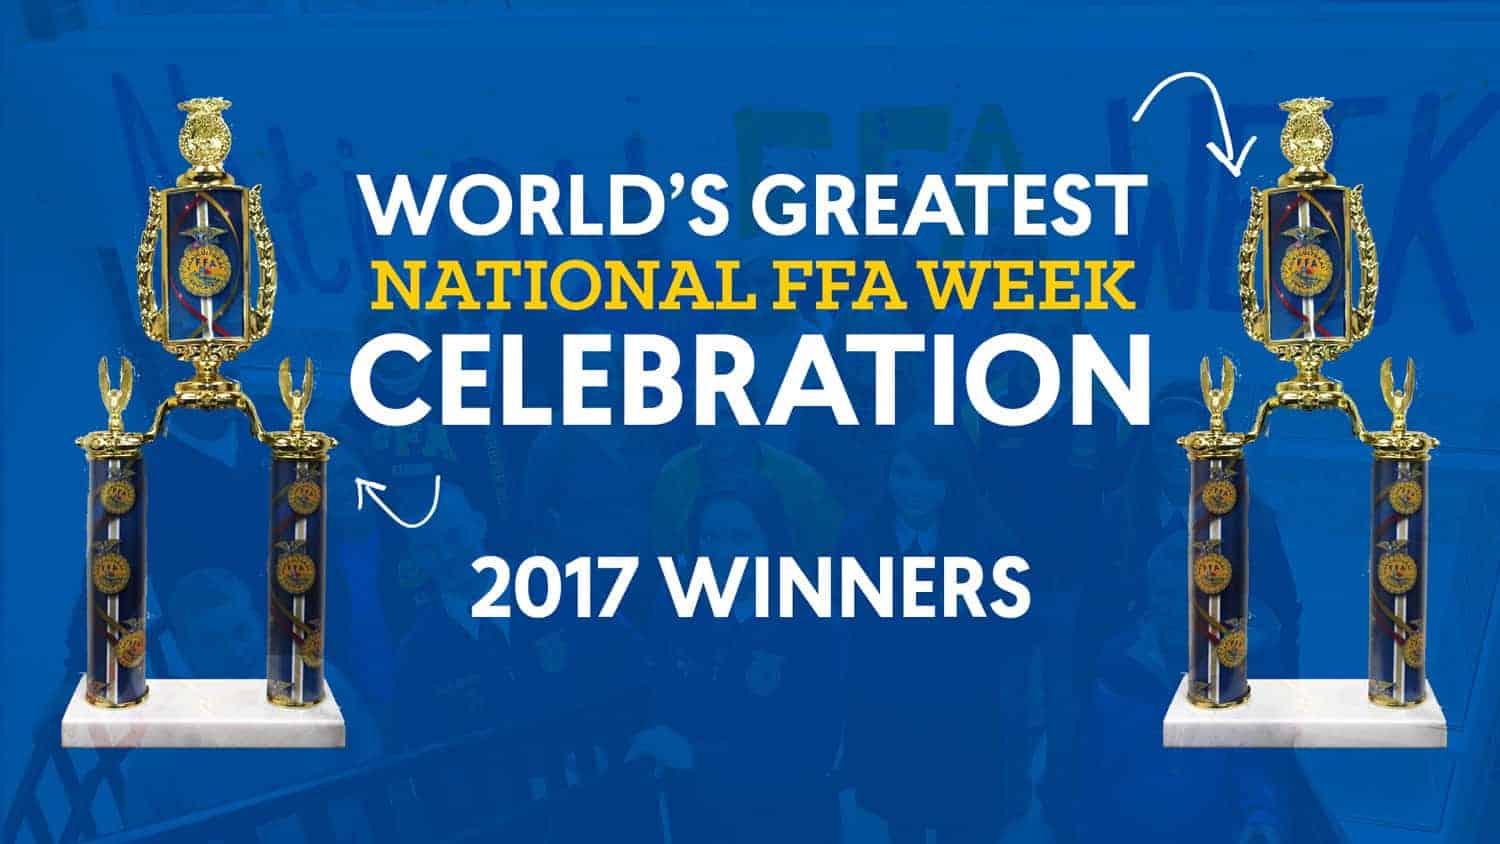 National FFA Week - National FFA Organization